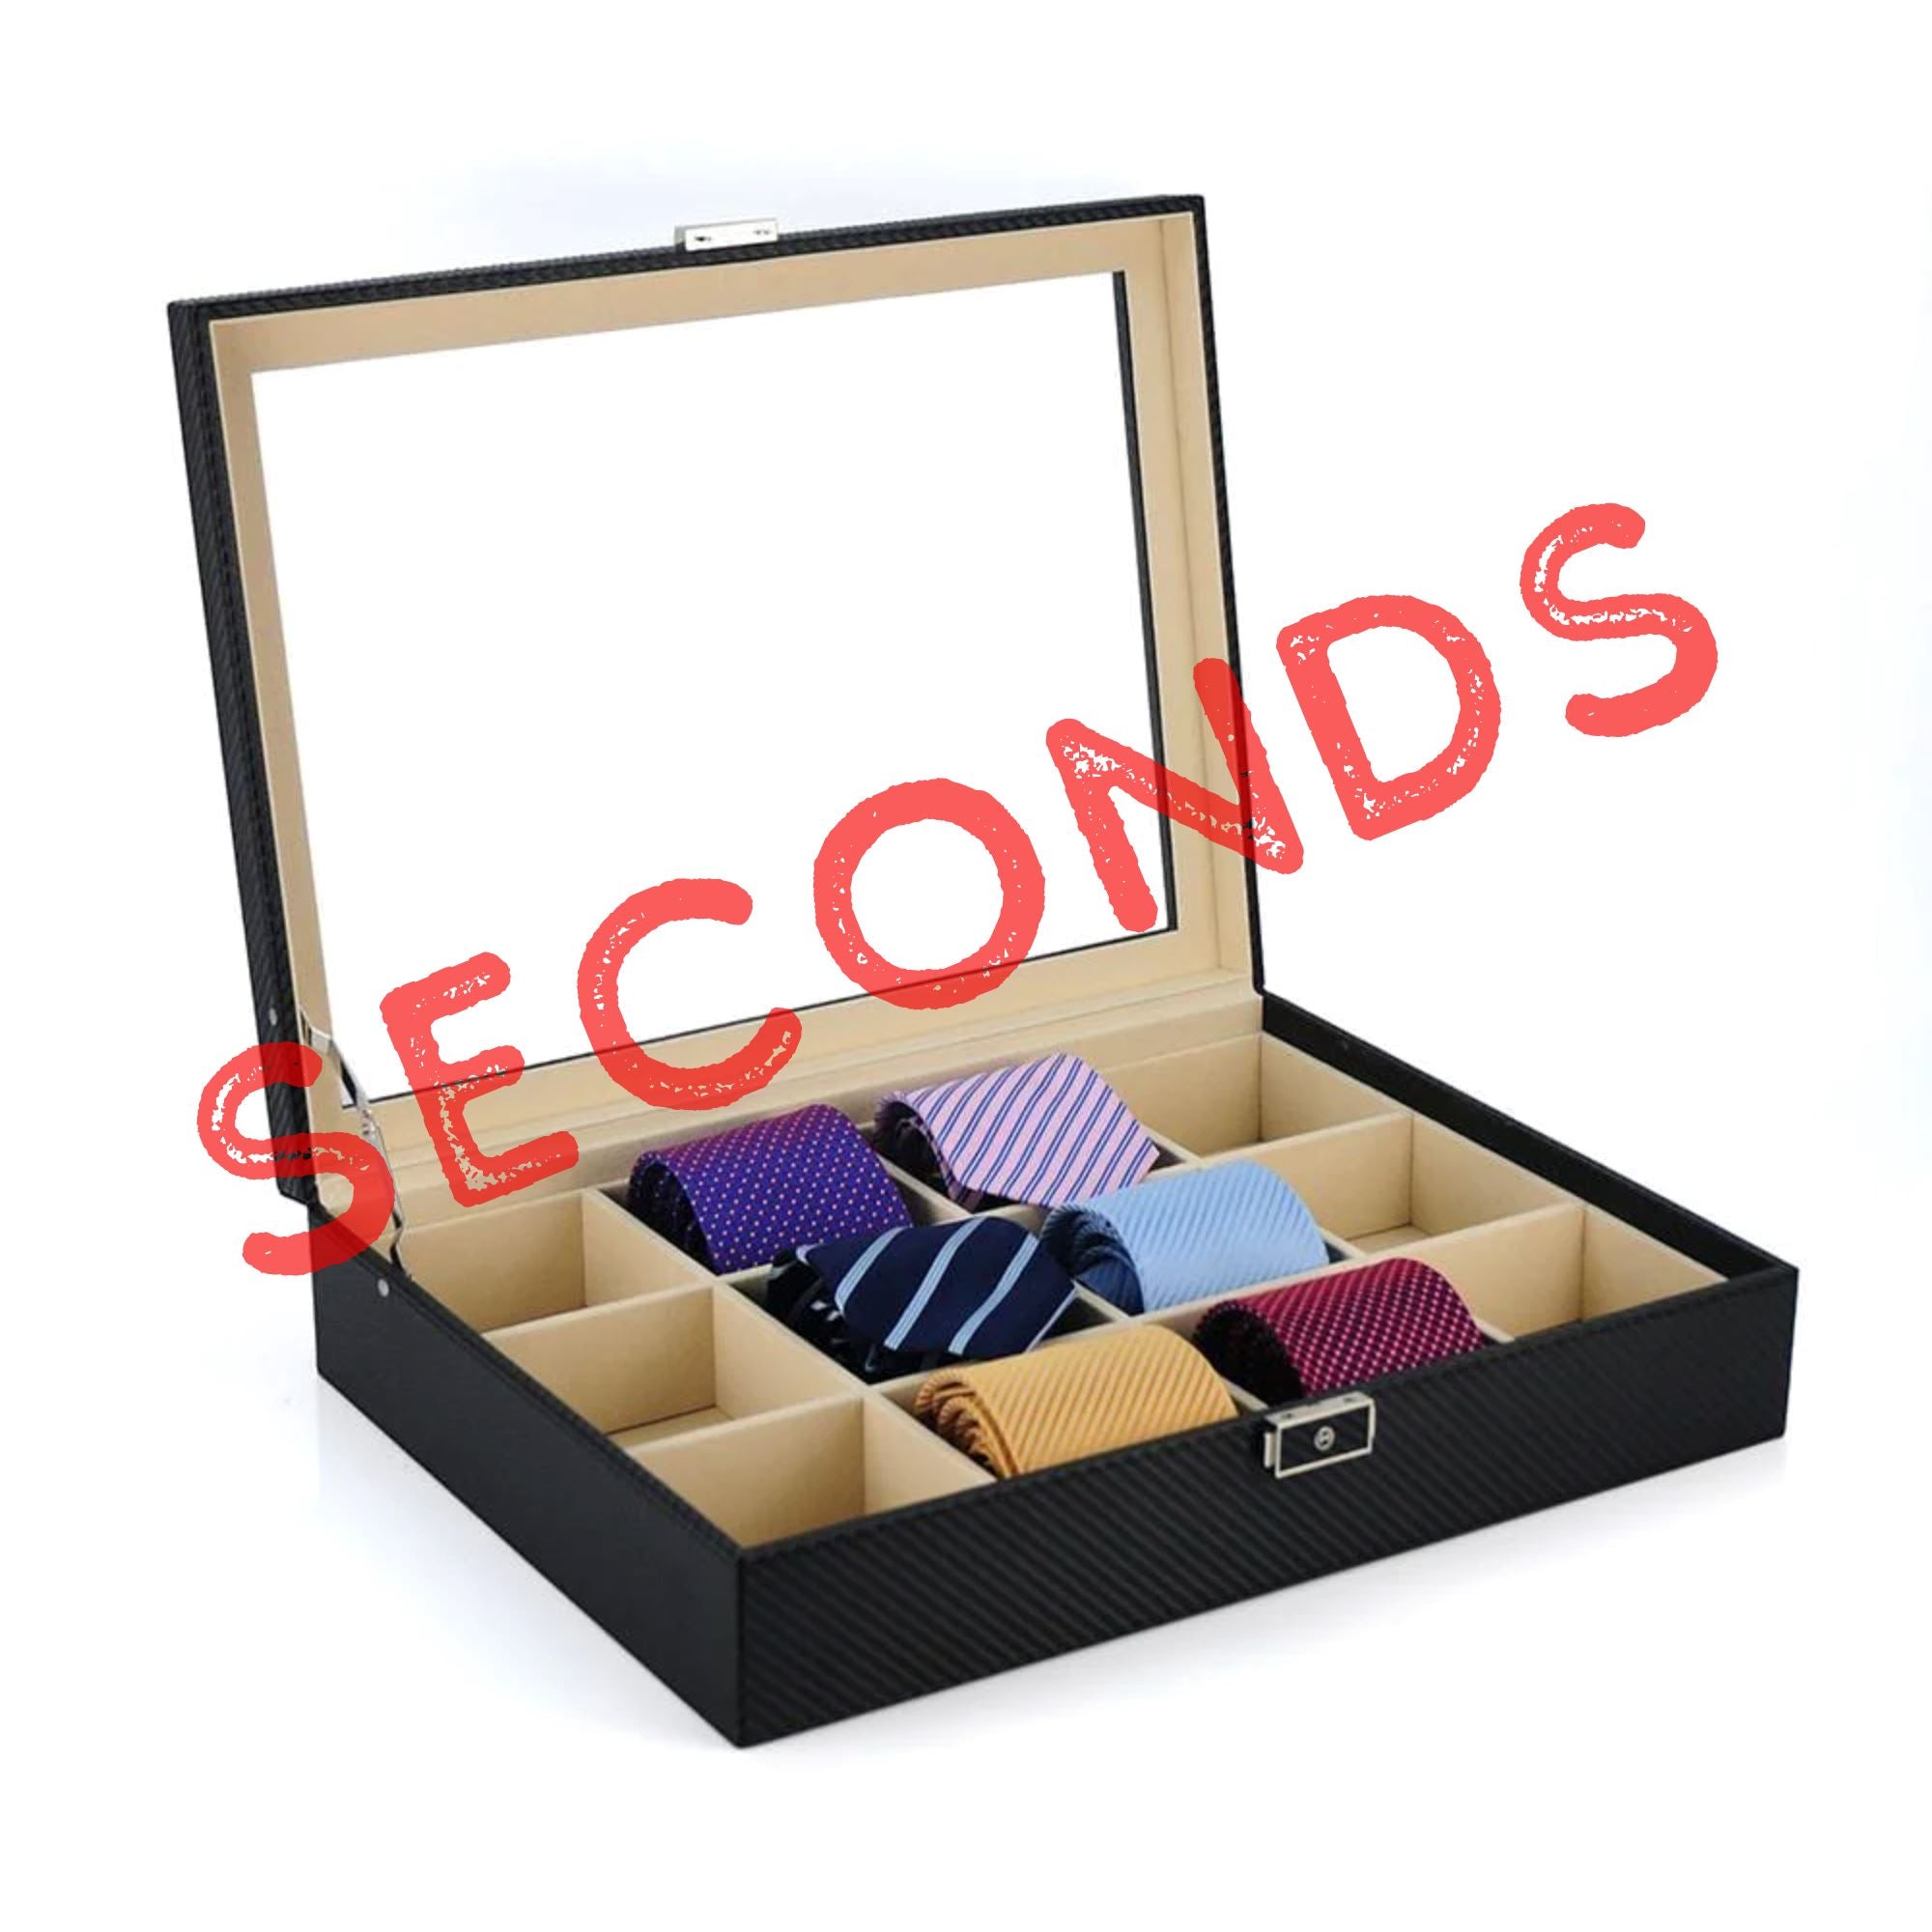 Seconds - Carbon Fibre Leather Tie Box for 12 Seconds Clinks 